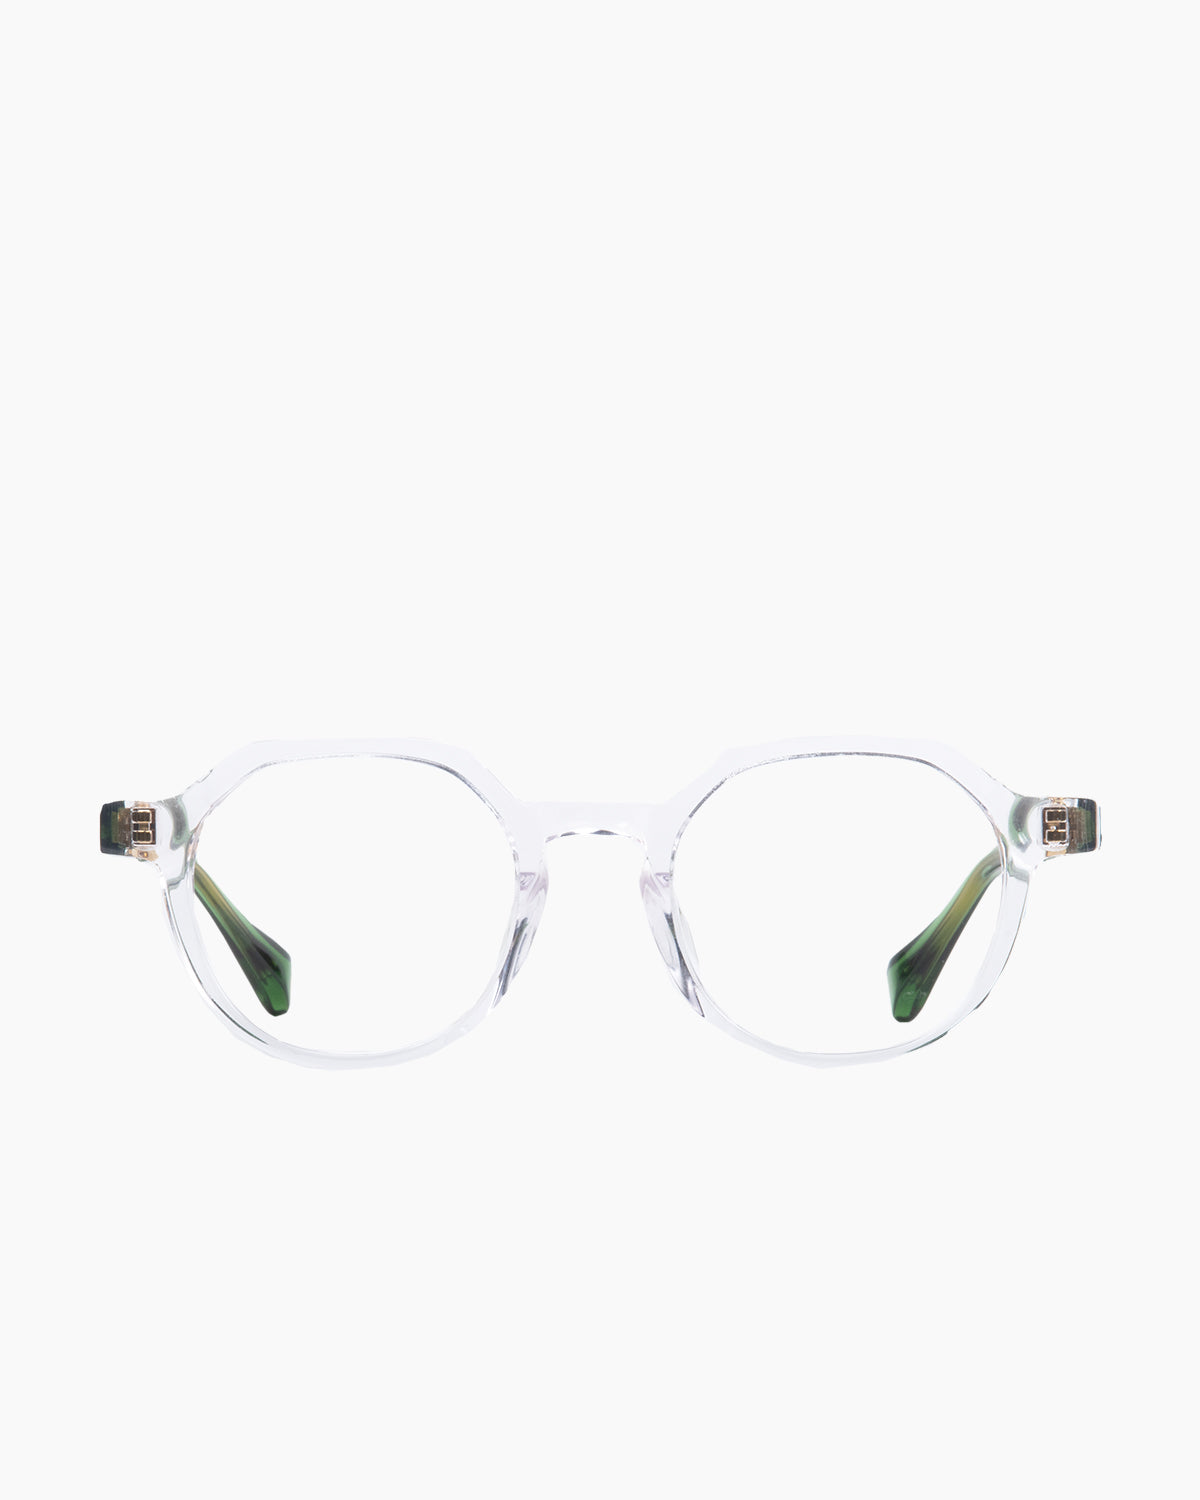 Francois Pinton - Haussmann9af - CG | glasses bar:  Marie-Sophie Dion